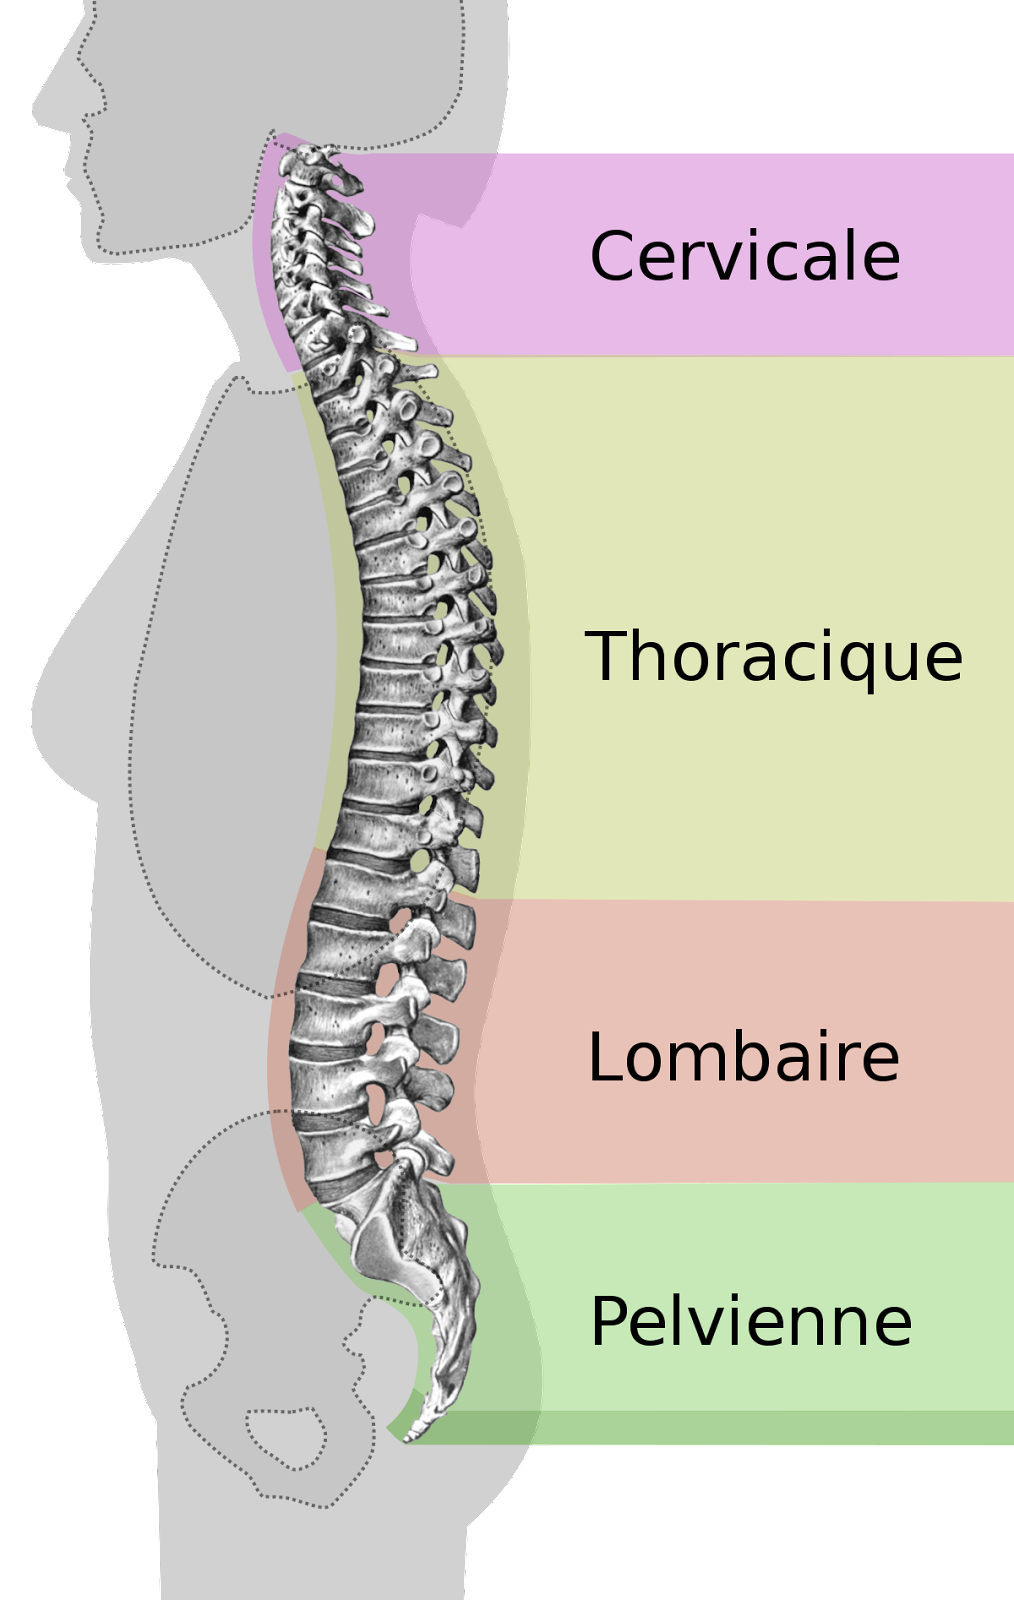 Douleurs du dos : diagnostiquer et traiter la dorsalgie